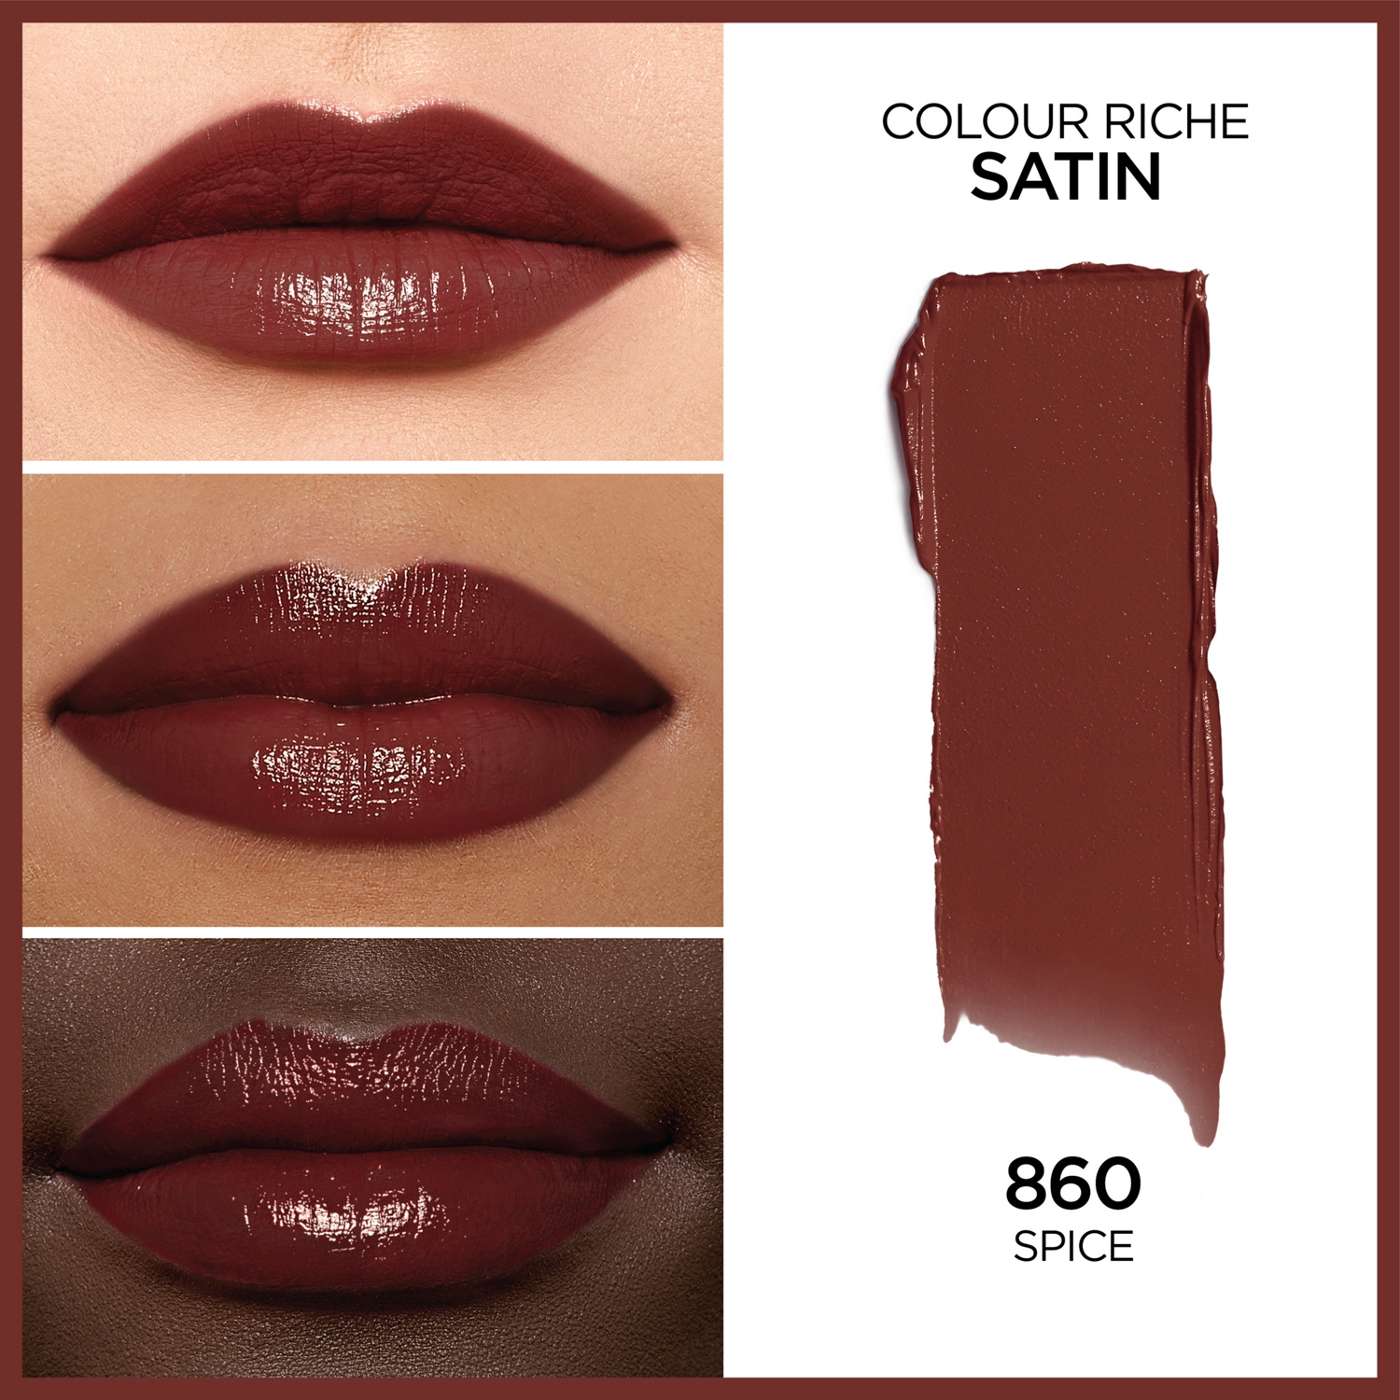 L'Oréal Paris Colour Riche Original Satin Lipstick - Spice; image 4 of 5